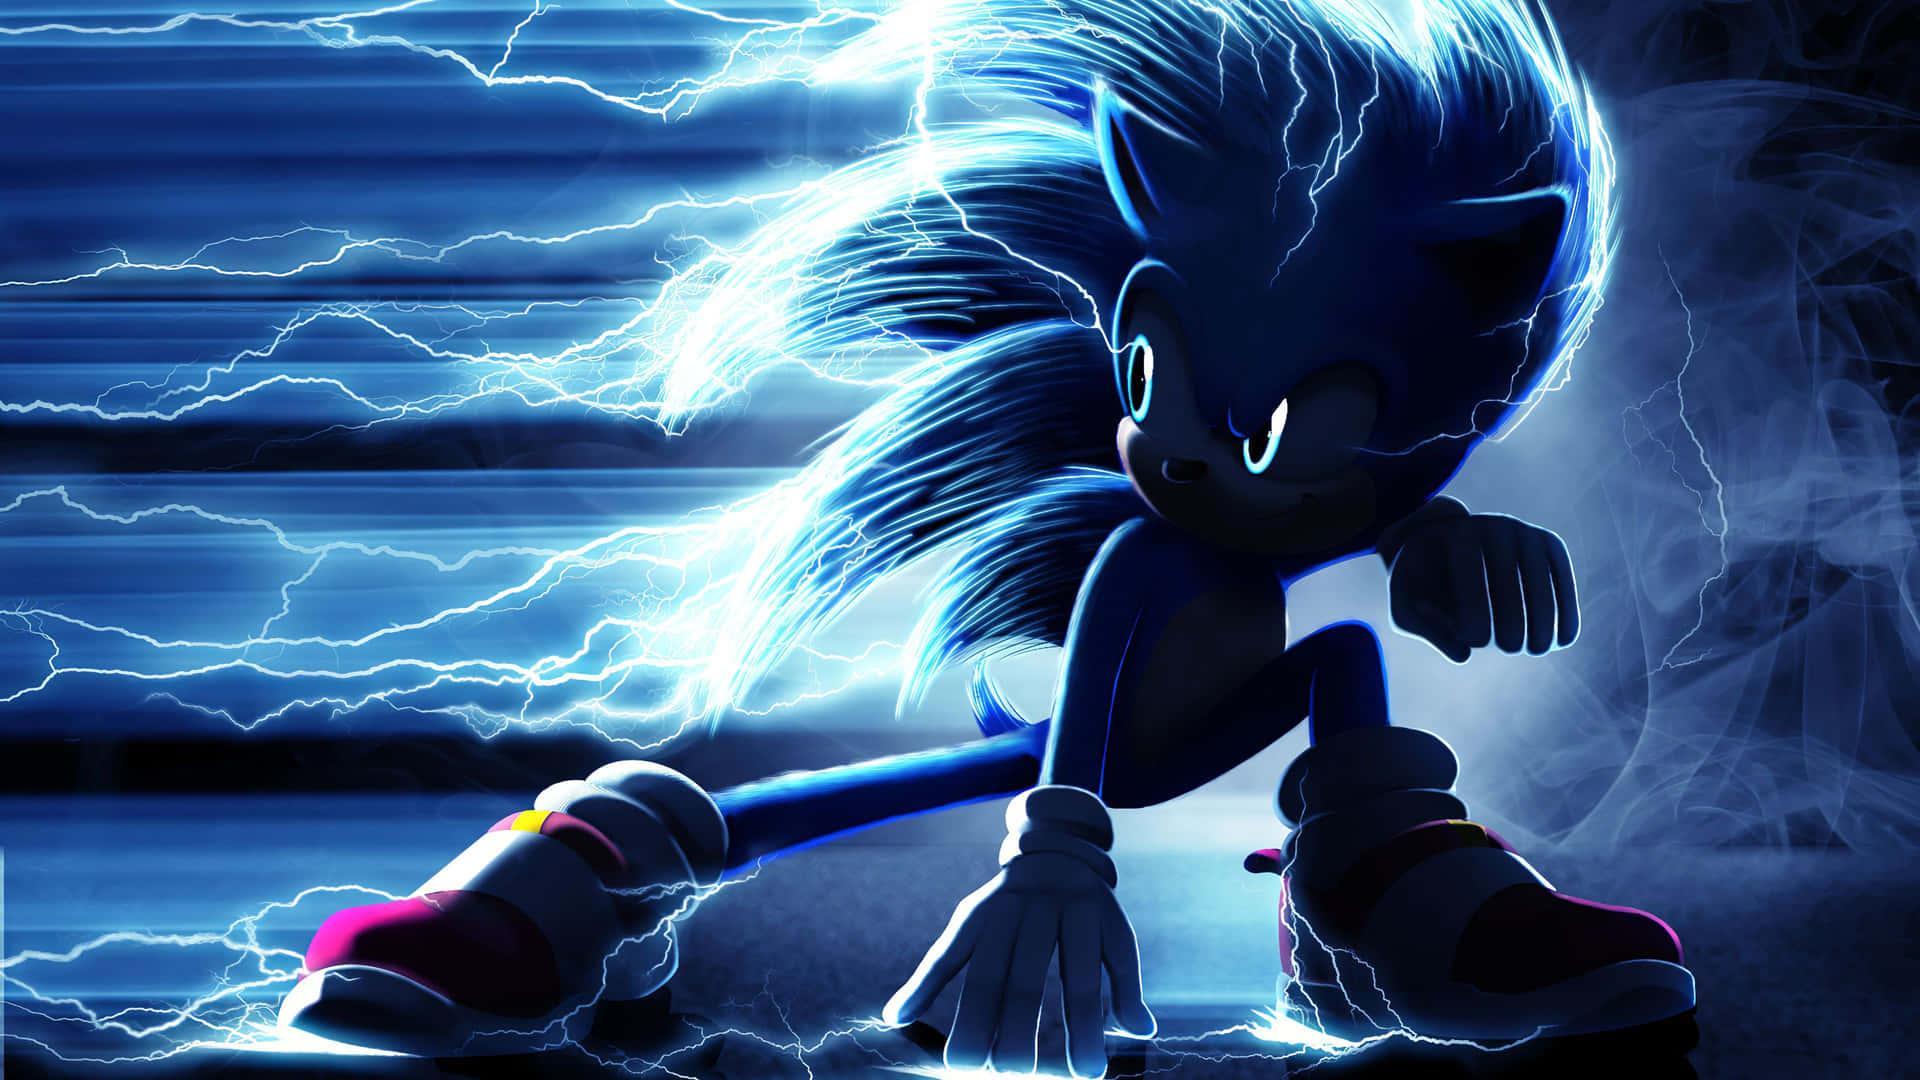 Unclassico Personaggio Dei Videogiochi, Sonic The Hedgehog!